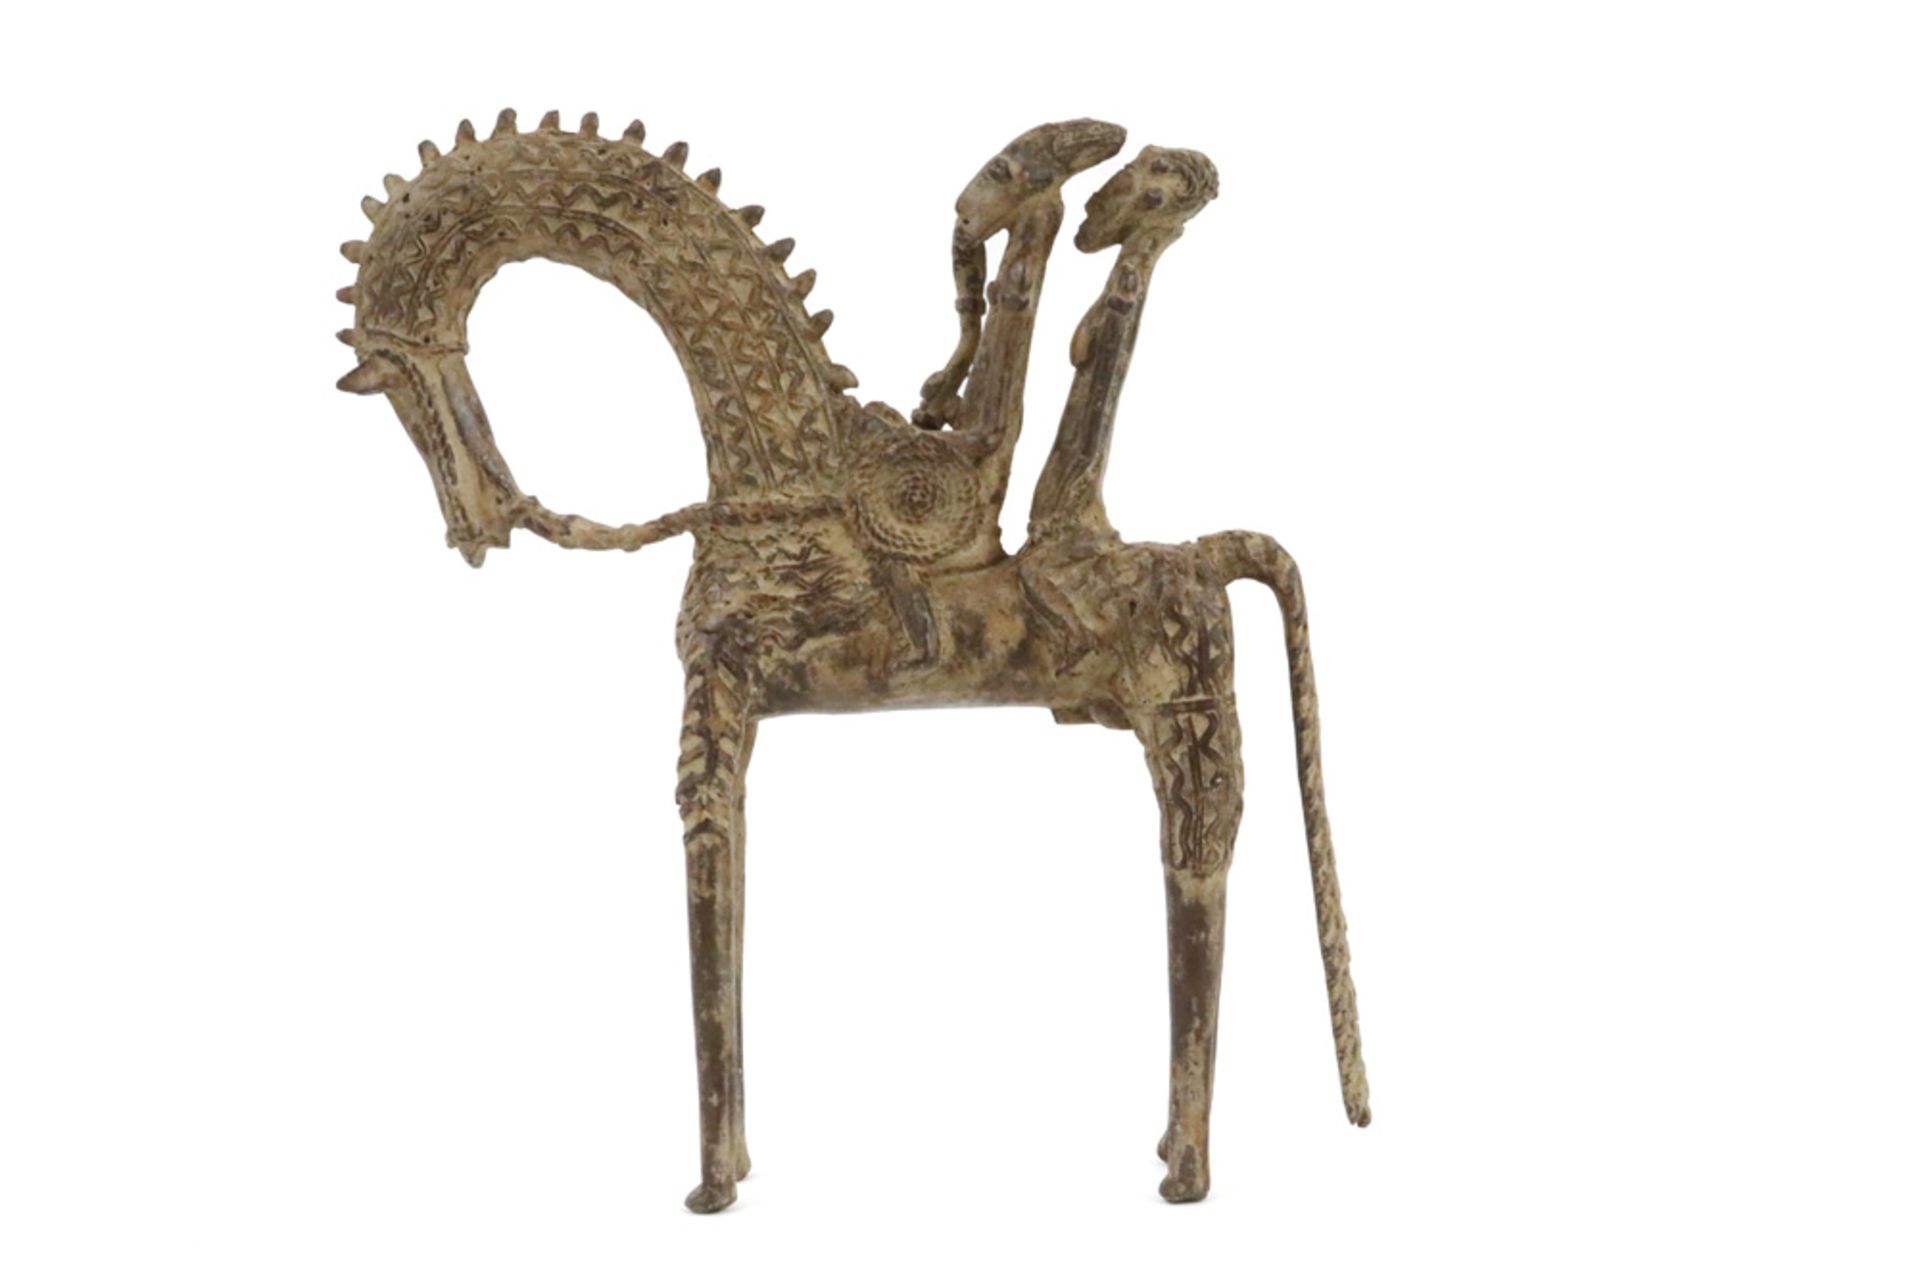 Dogon sculpture in bronze || Afrikaanse sculptuur in brons uit Mali : "Dogon - krijger te paard